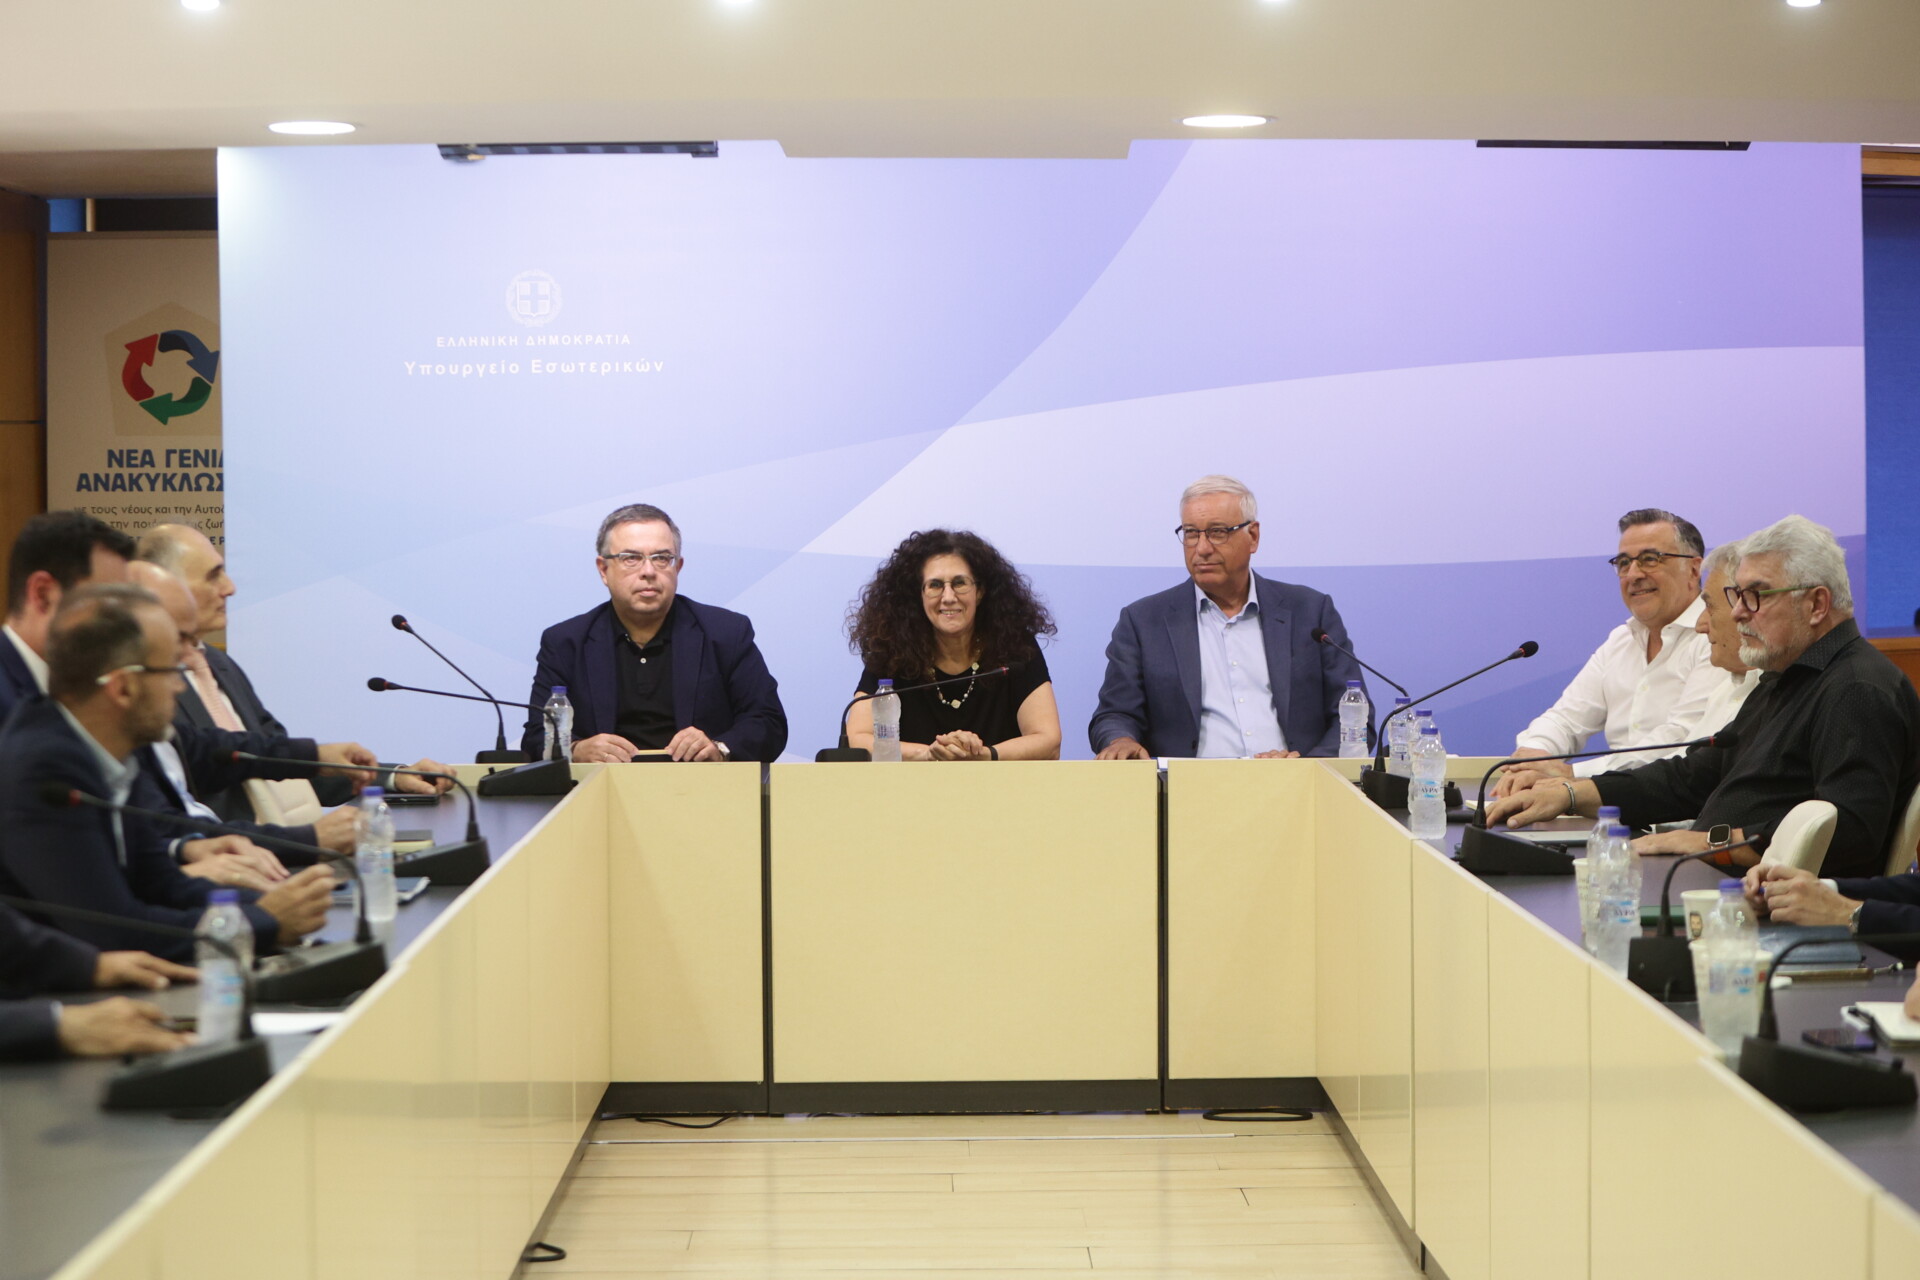 Συνεδρίαση της Διακομματικής Επιτροπής στο υπουργείο Εσωτερικών με βασικό θέμα συζήτησης την διεξαγωγή τηλεοπτικής αναμέτρησης (debate) μεταξύ των αρχηγών των κοινοβουλευτικών κομμάτων ενόψει των εκλογών της 25/6 © Eurokinissi